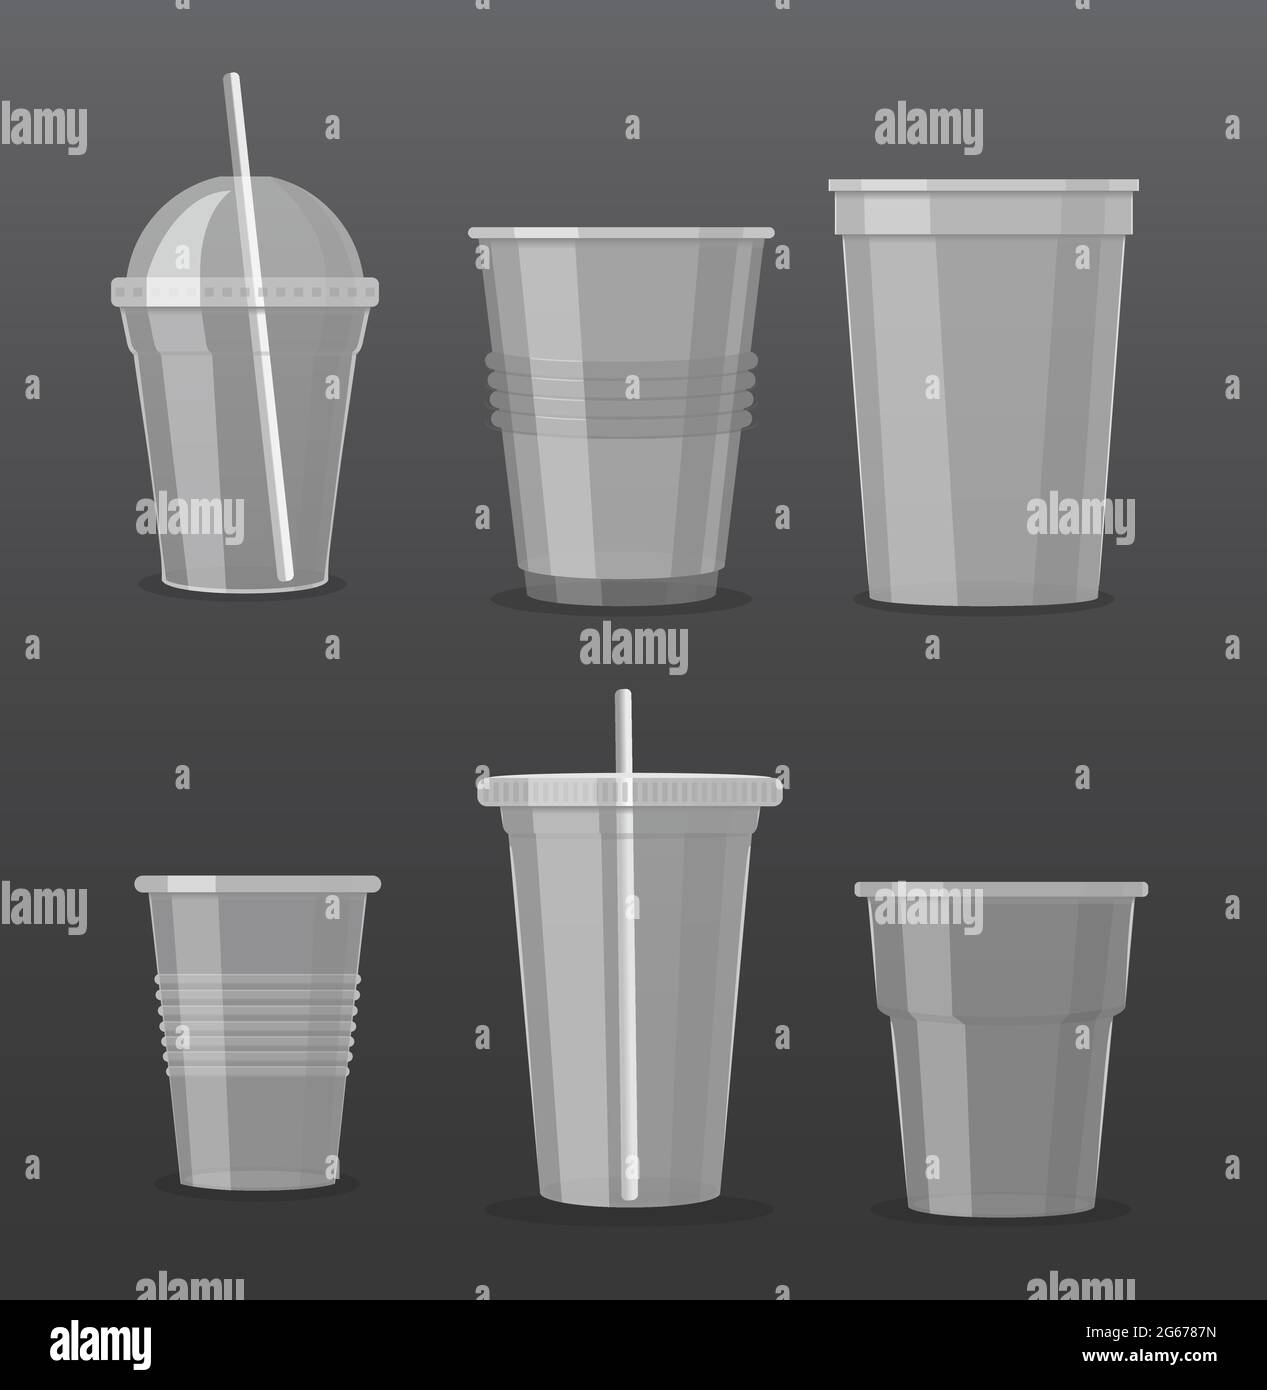 illustrazione vettoriale set di tazze monouso in plastica trasparente vuote isolate su sfondo grigio scuro. Collezione di bicchieri da bibita da asporto. Illustrazione Vettoriale